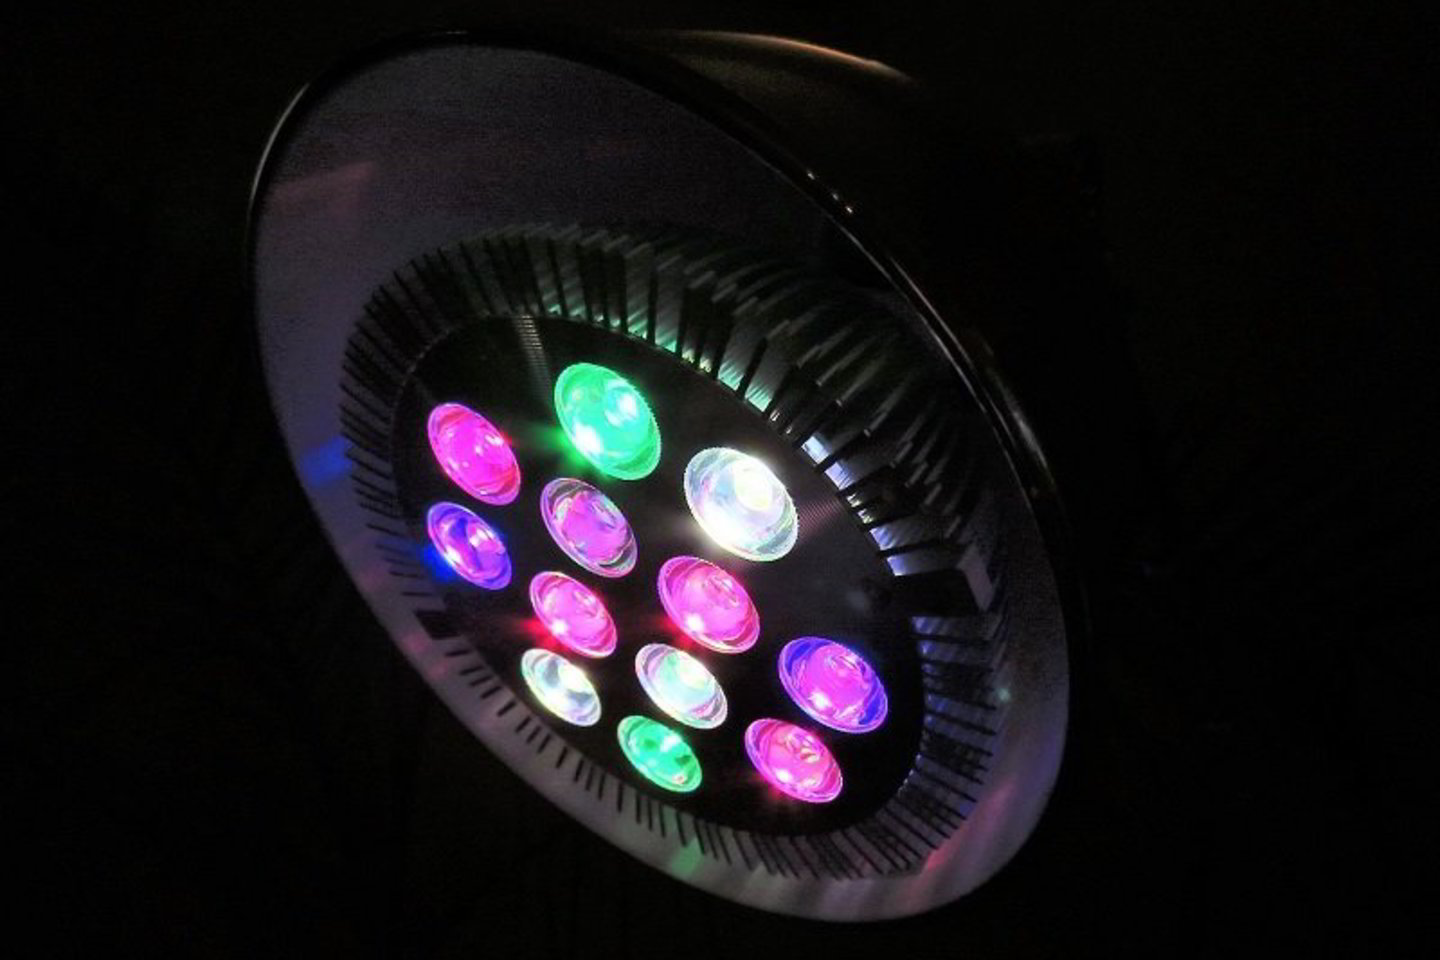  LED augalų lempos, turinčios daug spalvotų diodų, atrodo išties žaismingai.<br> R.Laurinavičienės nuotr.